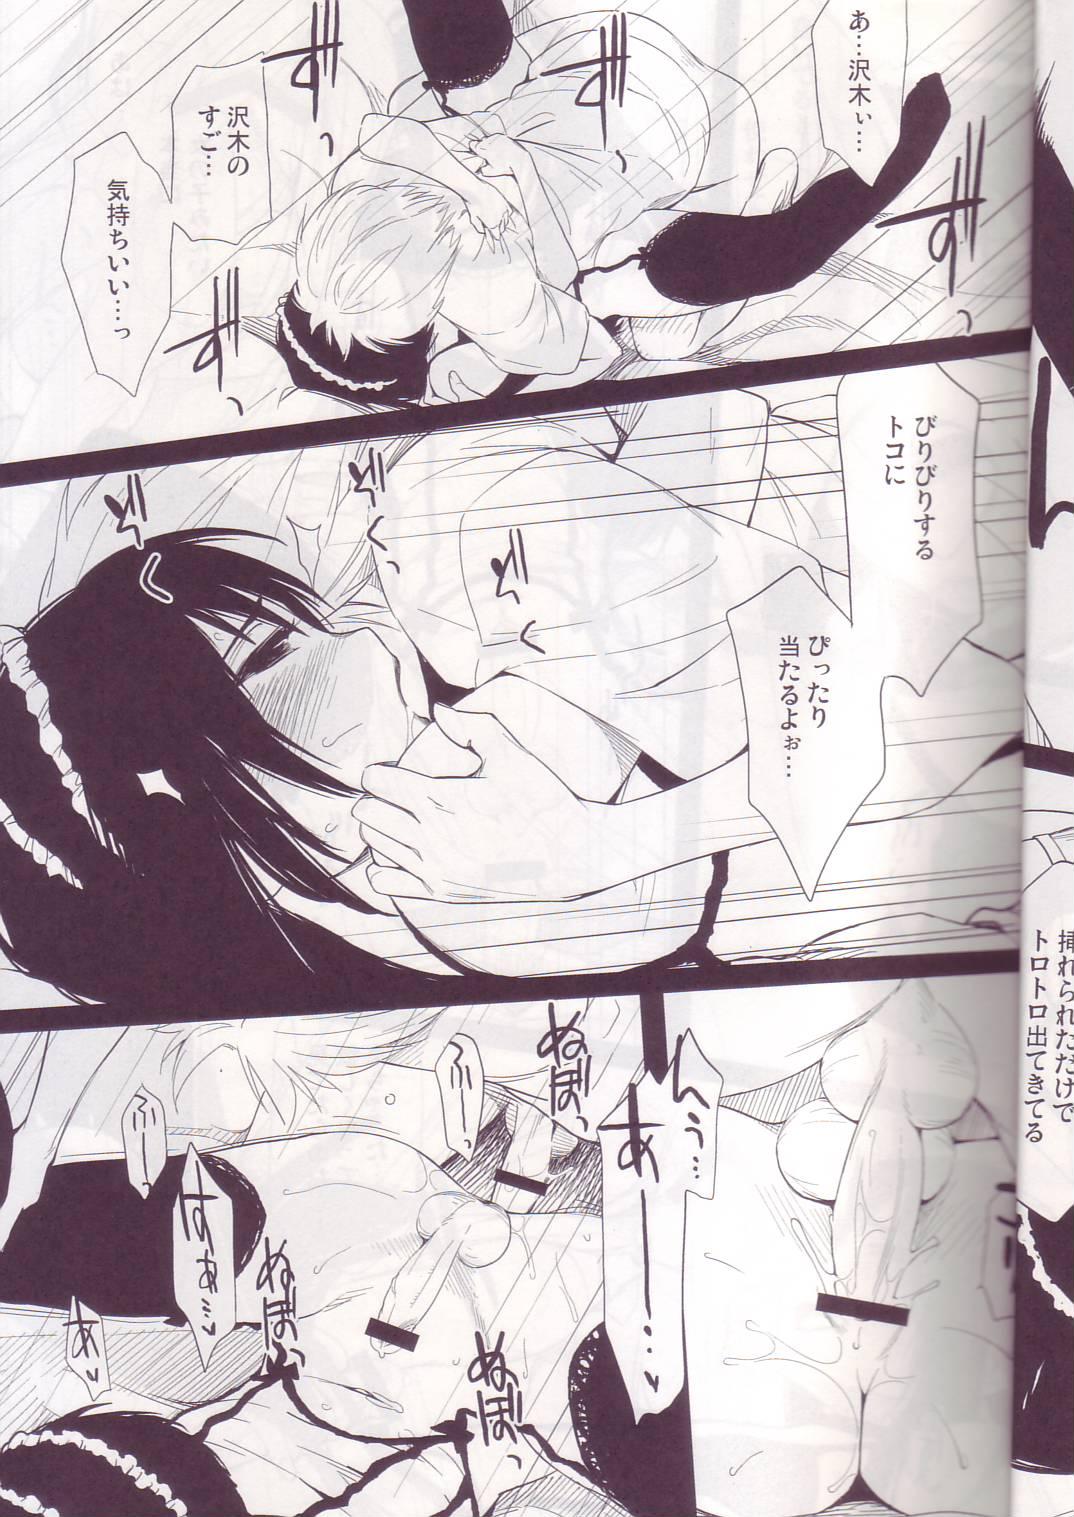 Men Ii Toshi Shita Otona ga Shiro Dano! Kuro Dano! - Moyashimon Actress - Page 8